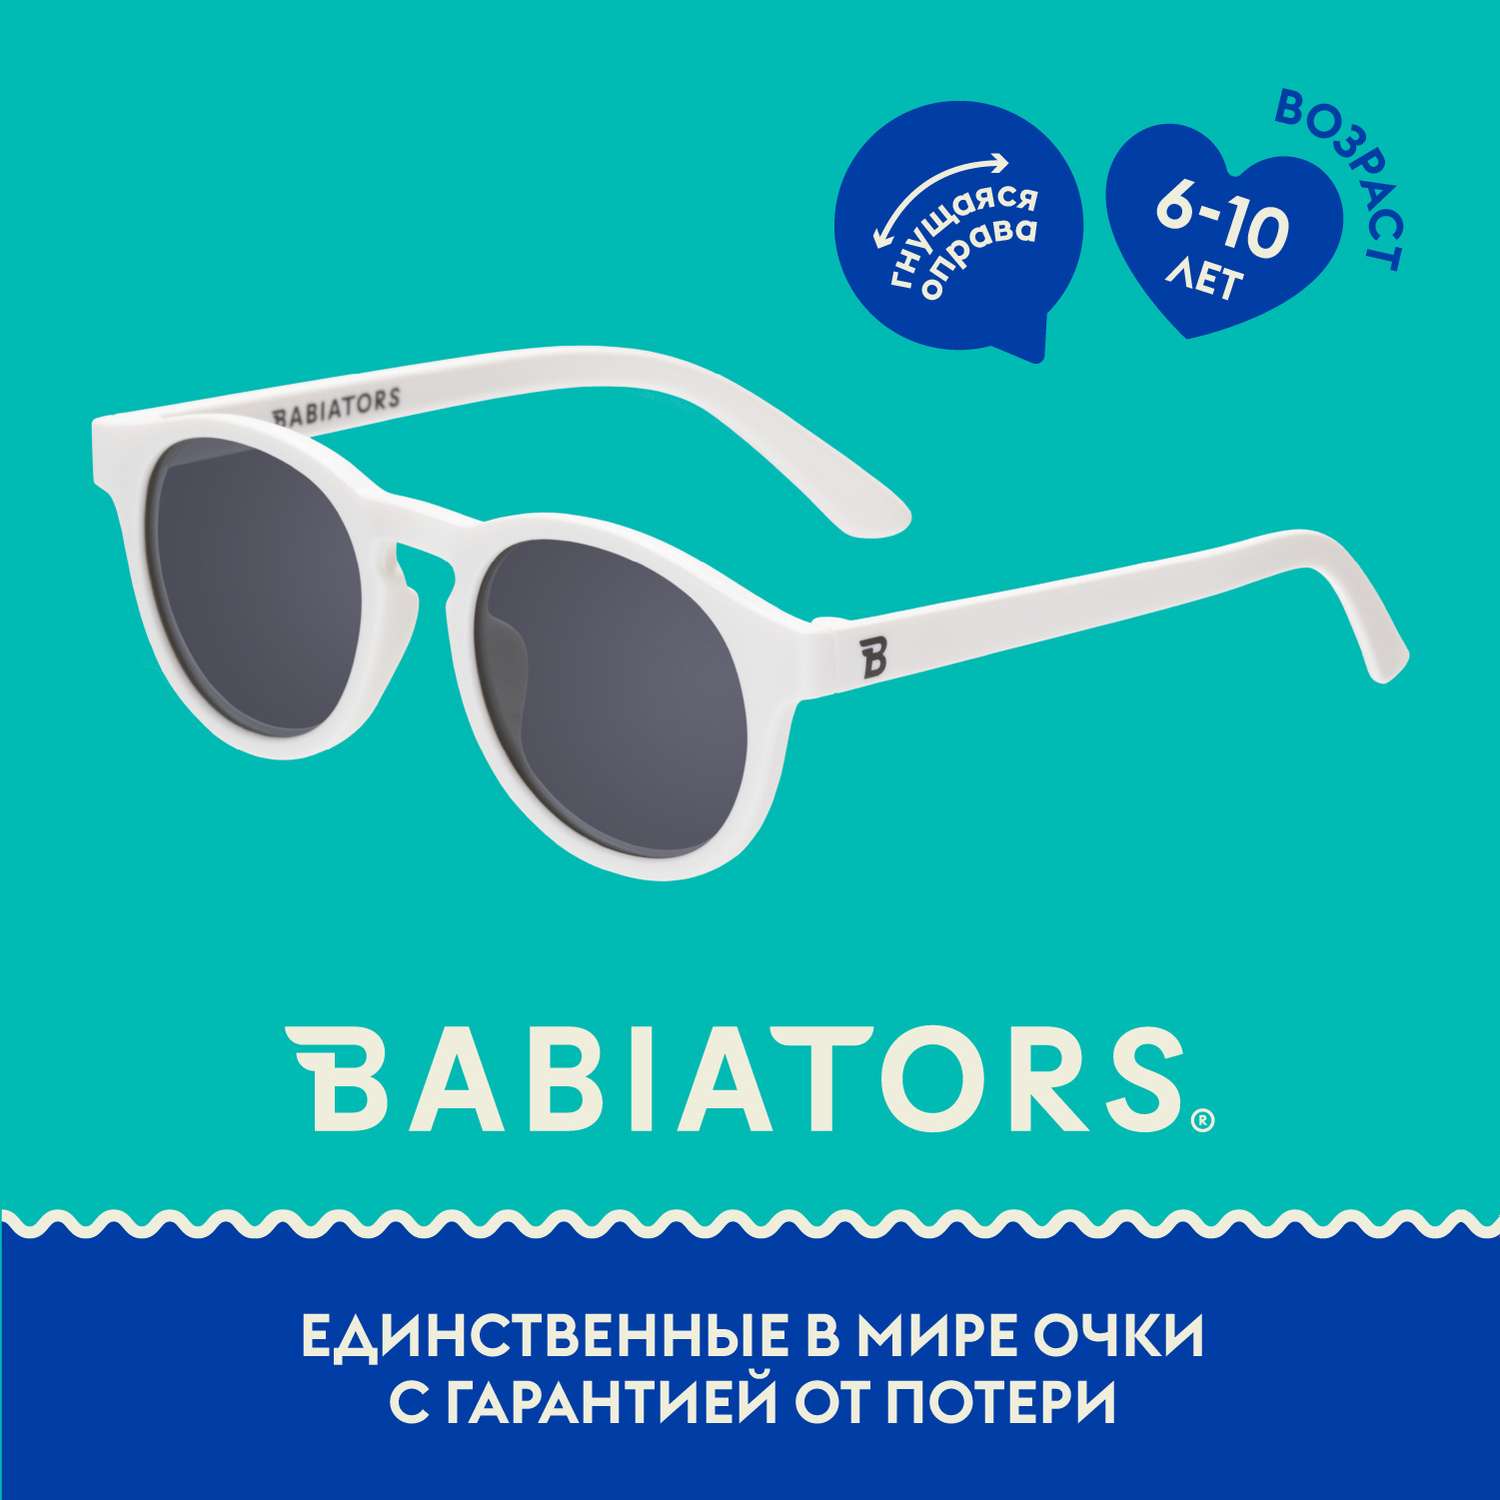 Детские солнцезащитные очки Babiators Keyhole Шаловливый белый 6+ лет KEY-012 - фото 2